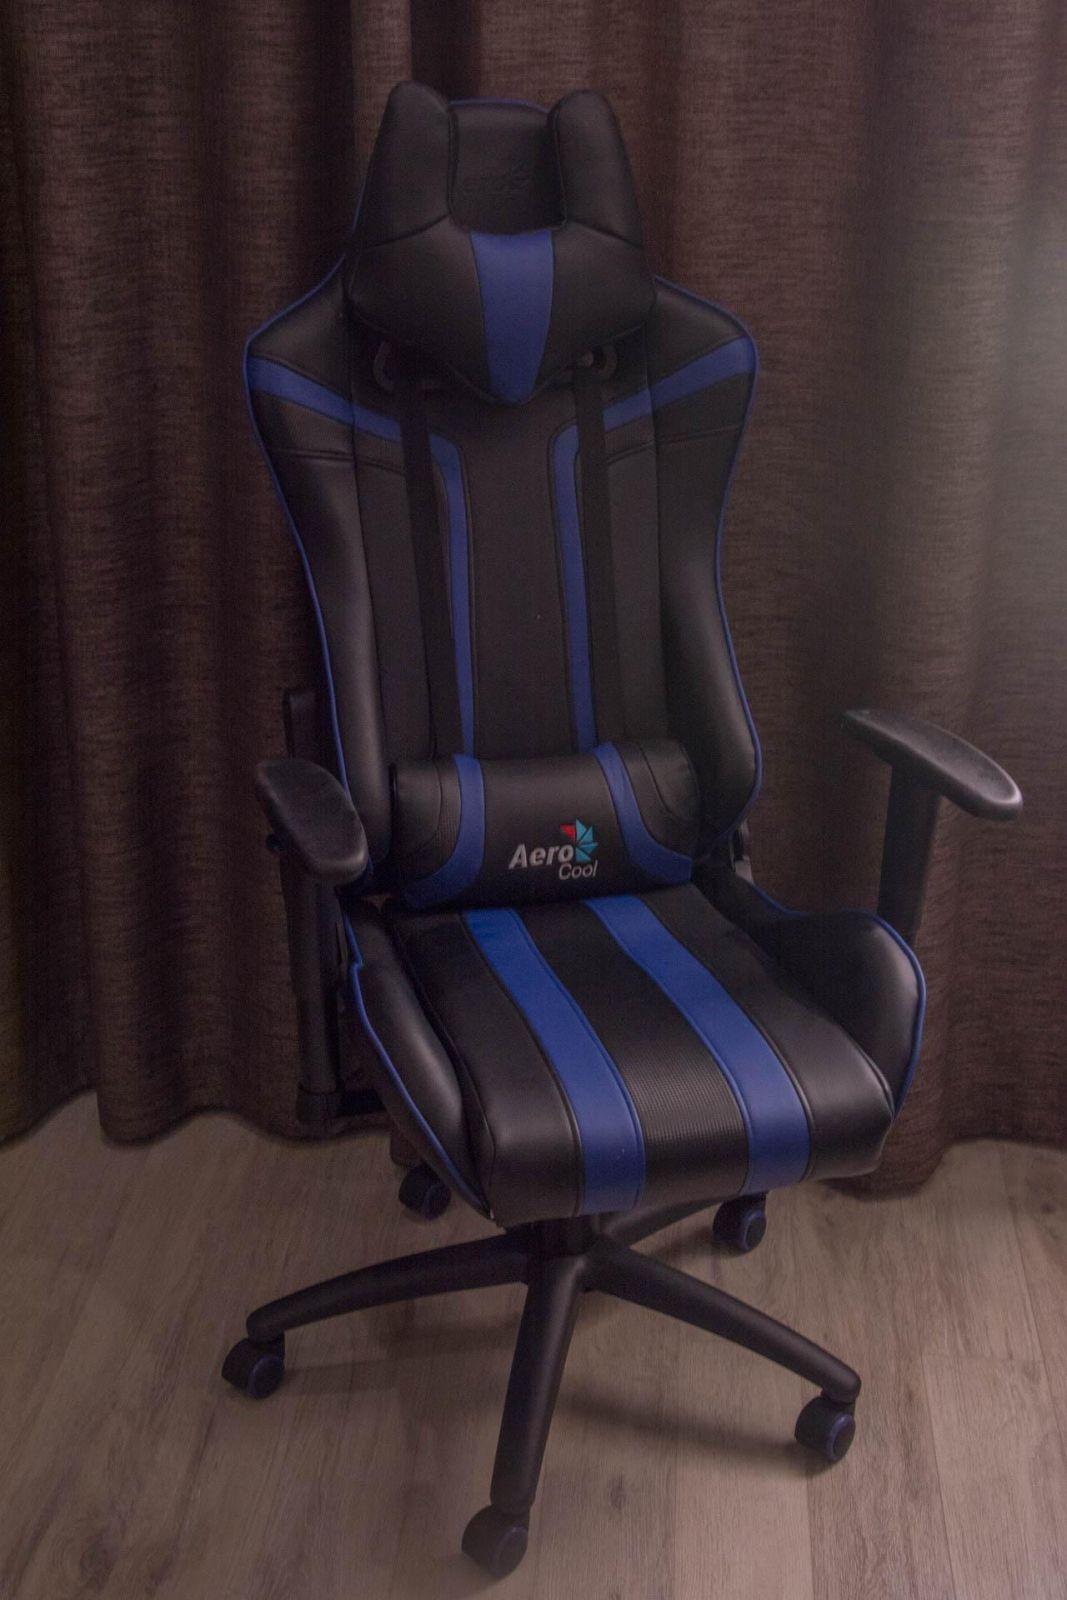 Геймерский трон. Обзор кресла AeroCool AC120 (DSC 4012)